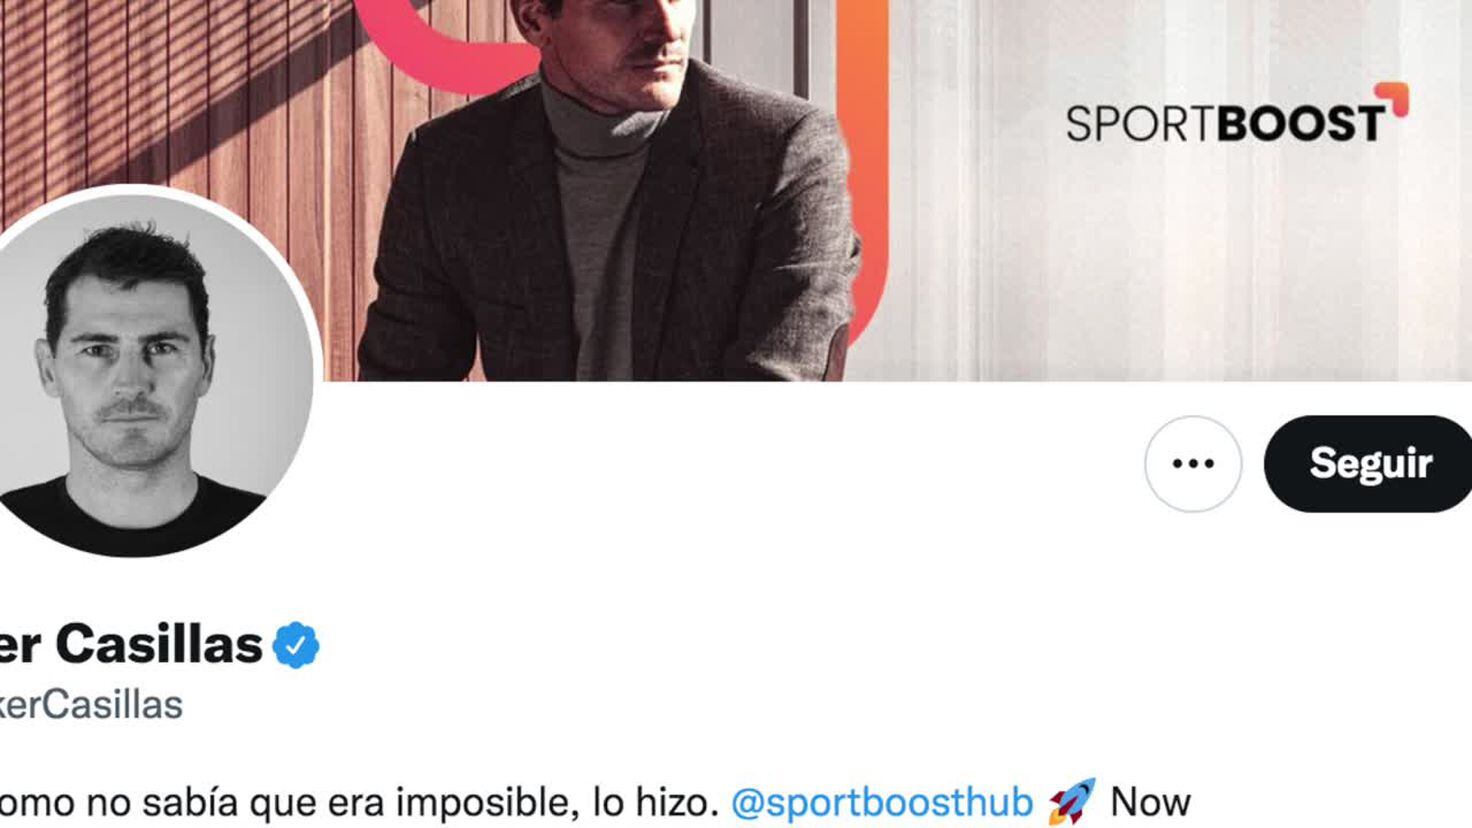 Casillas denuncia un hackeo tras un controvertido tuit - Tikitakas